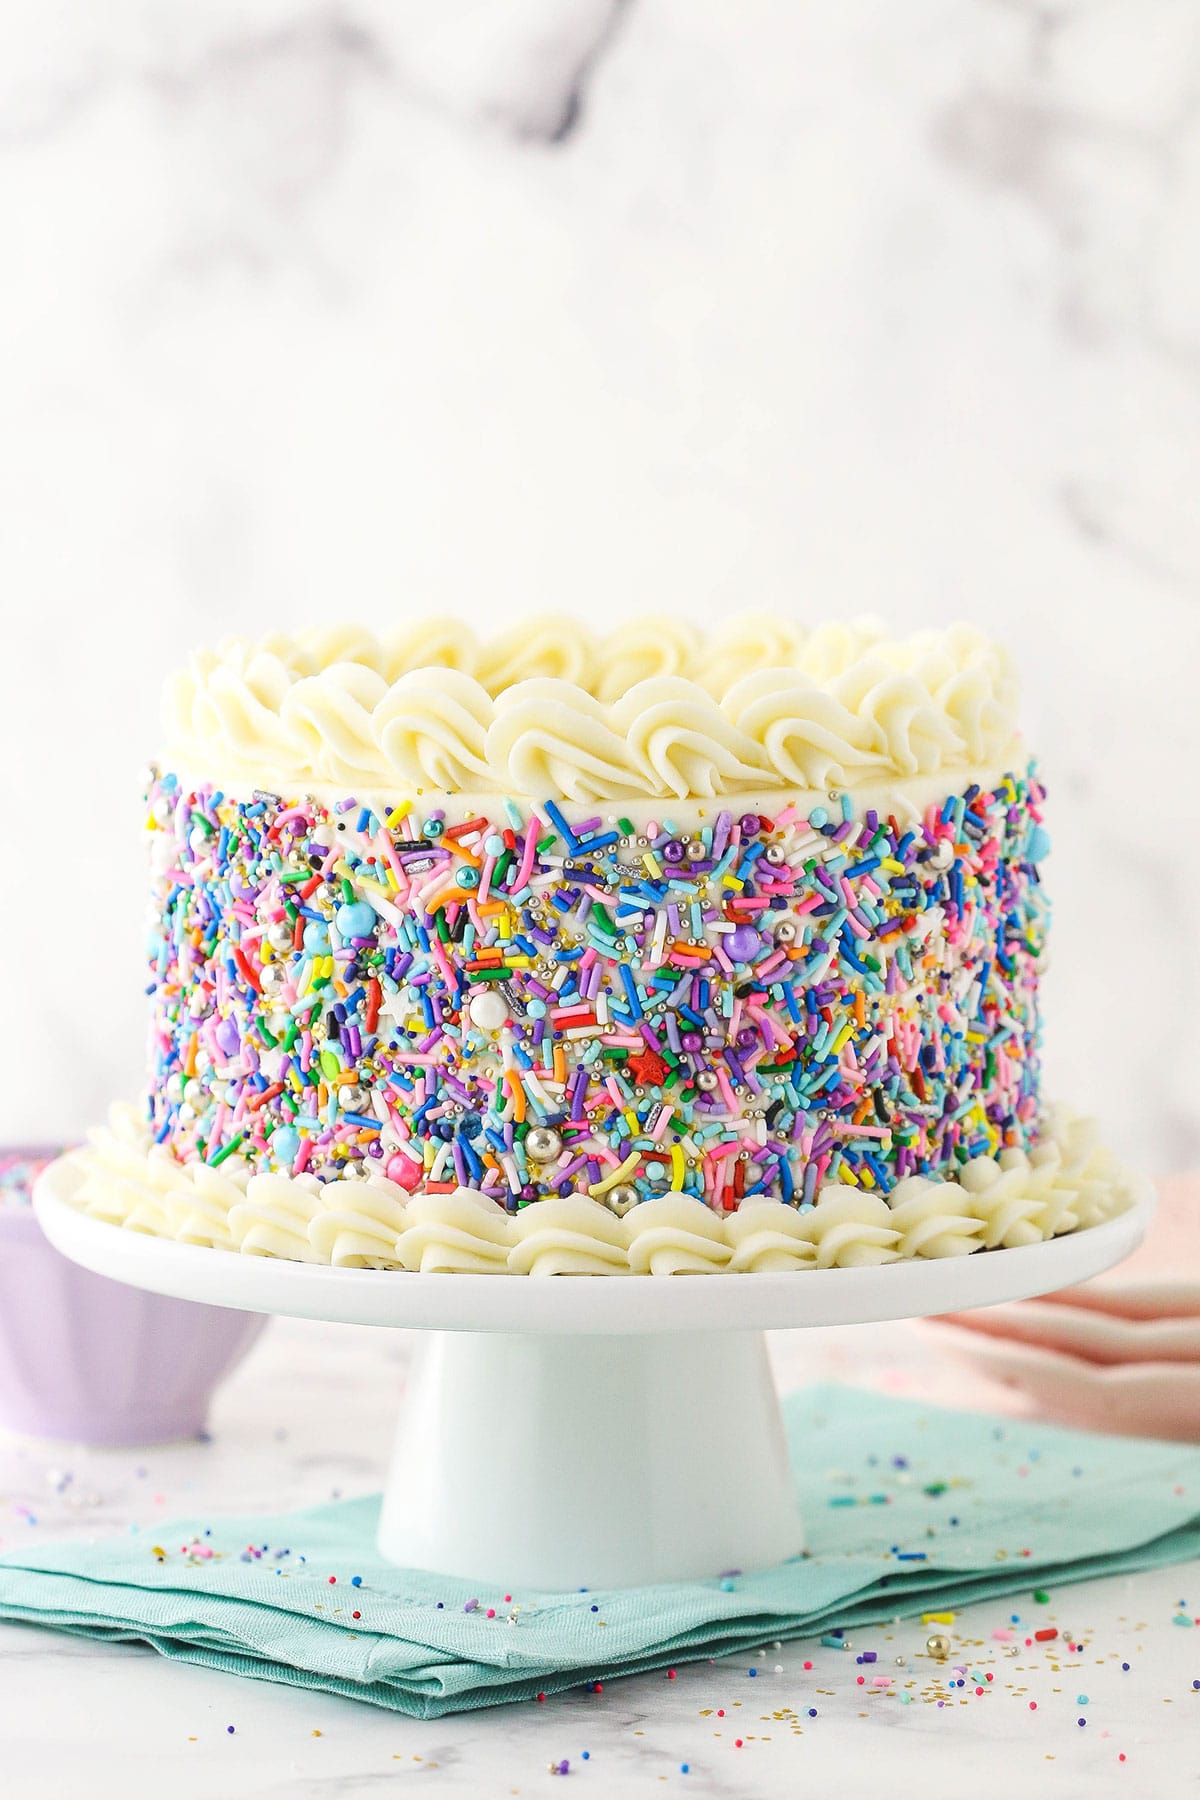 6 inch vanilla cake covered in sprinkles on blue napkin